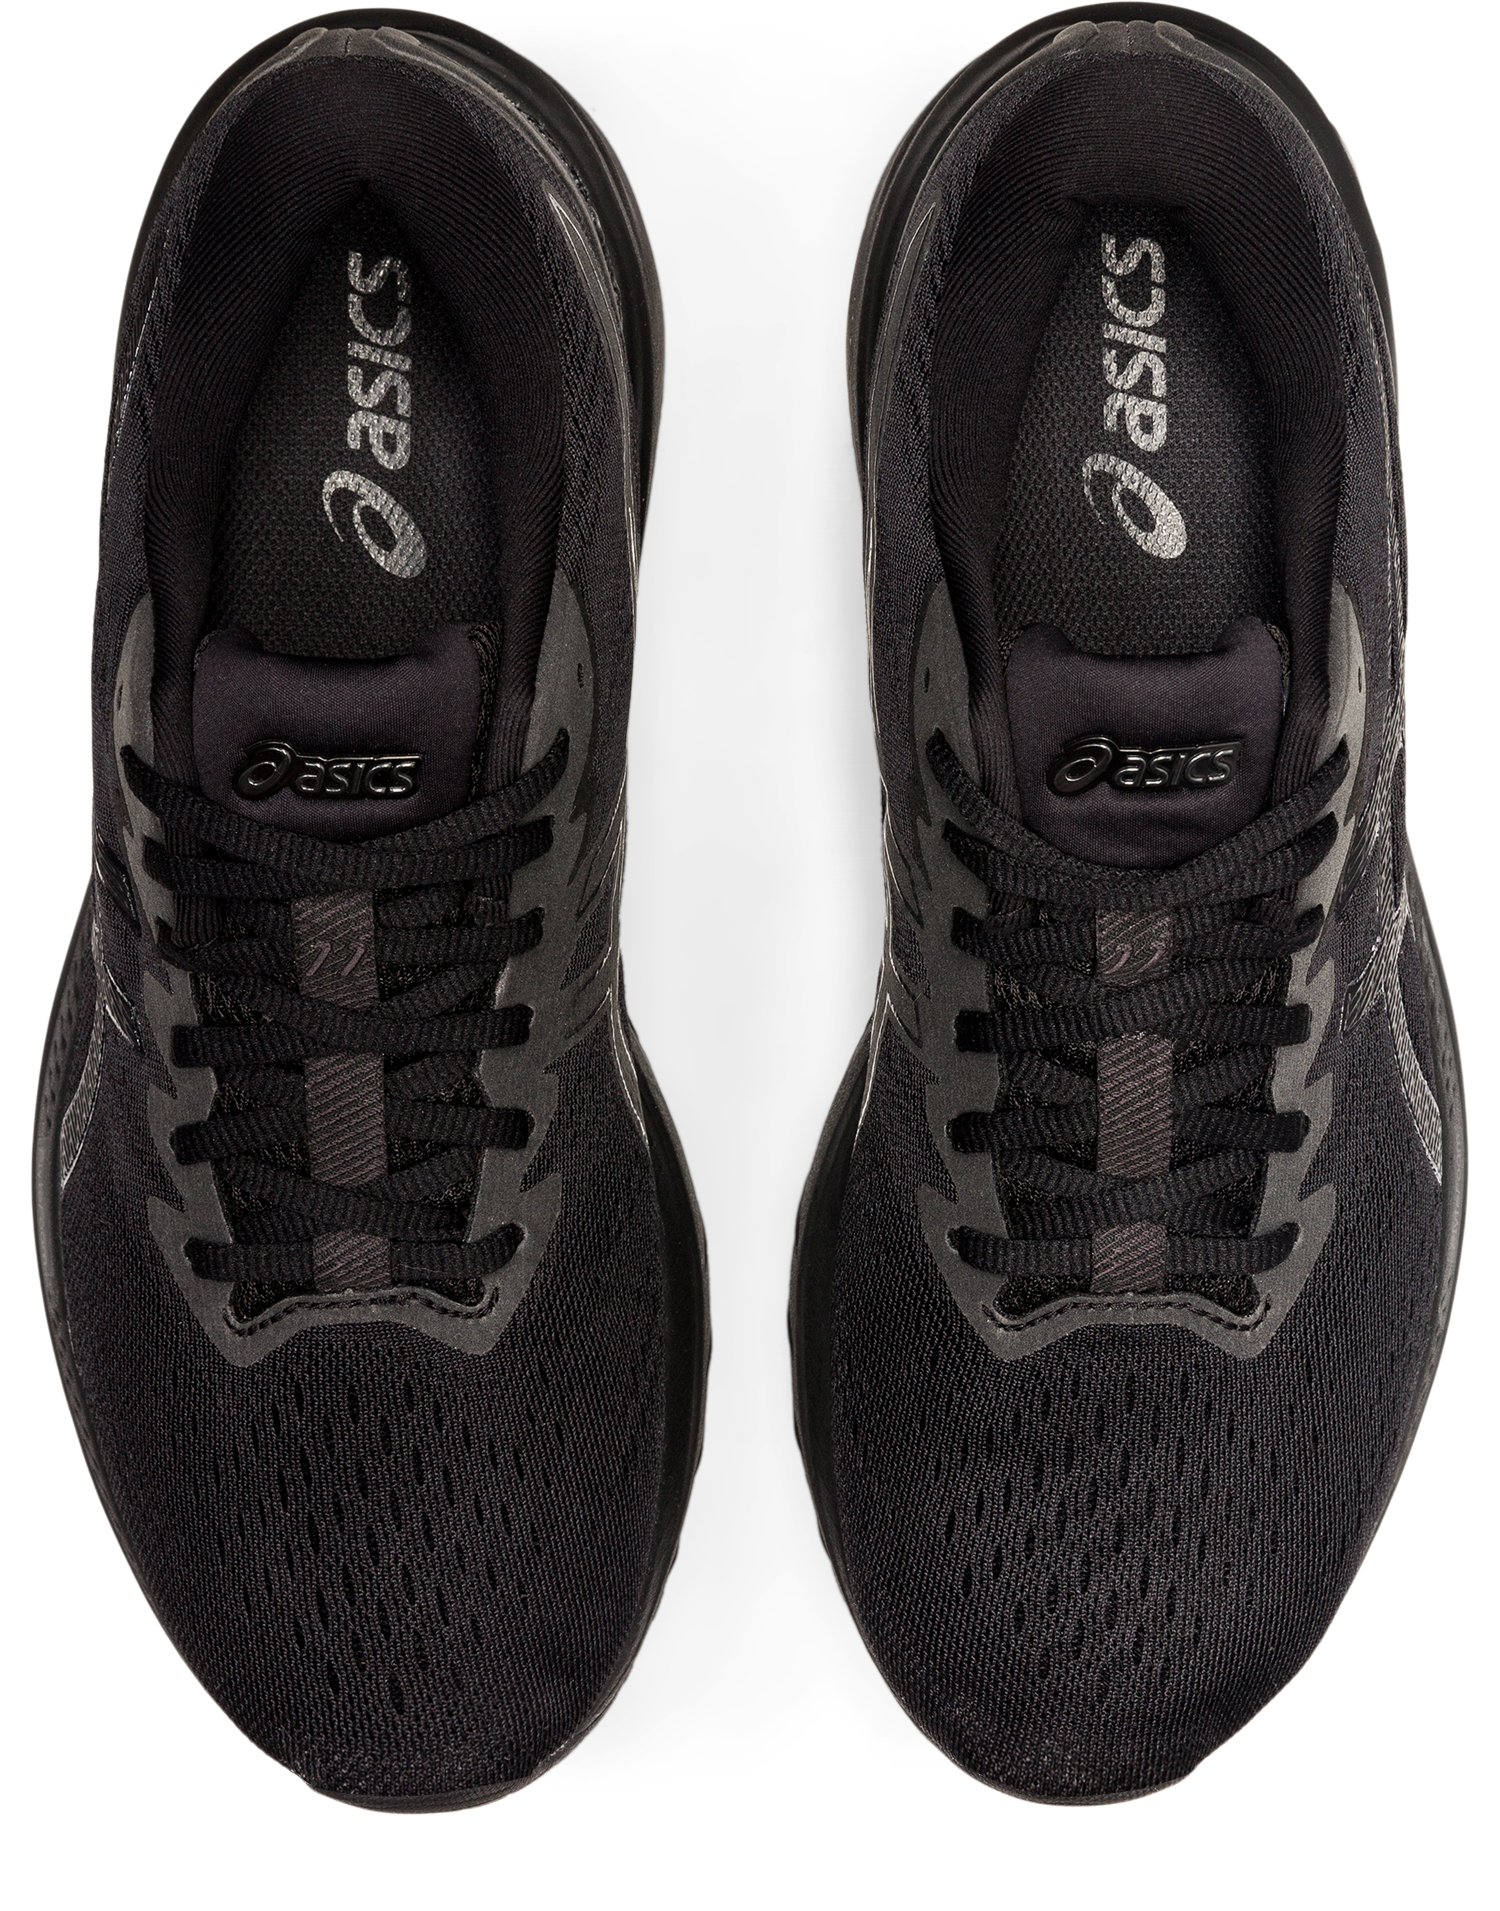 Asics Women's GT-1000 11 Running Shoes in Black/Black